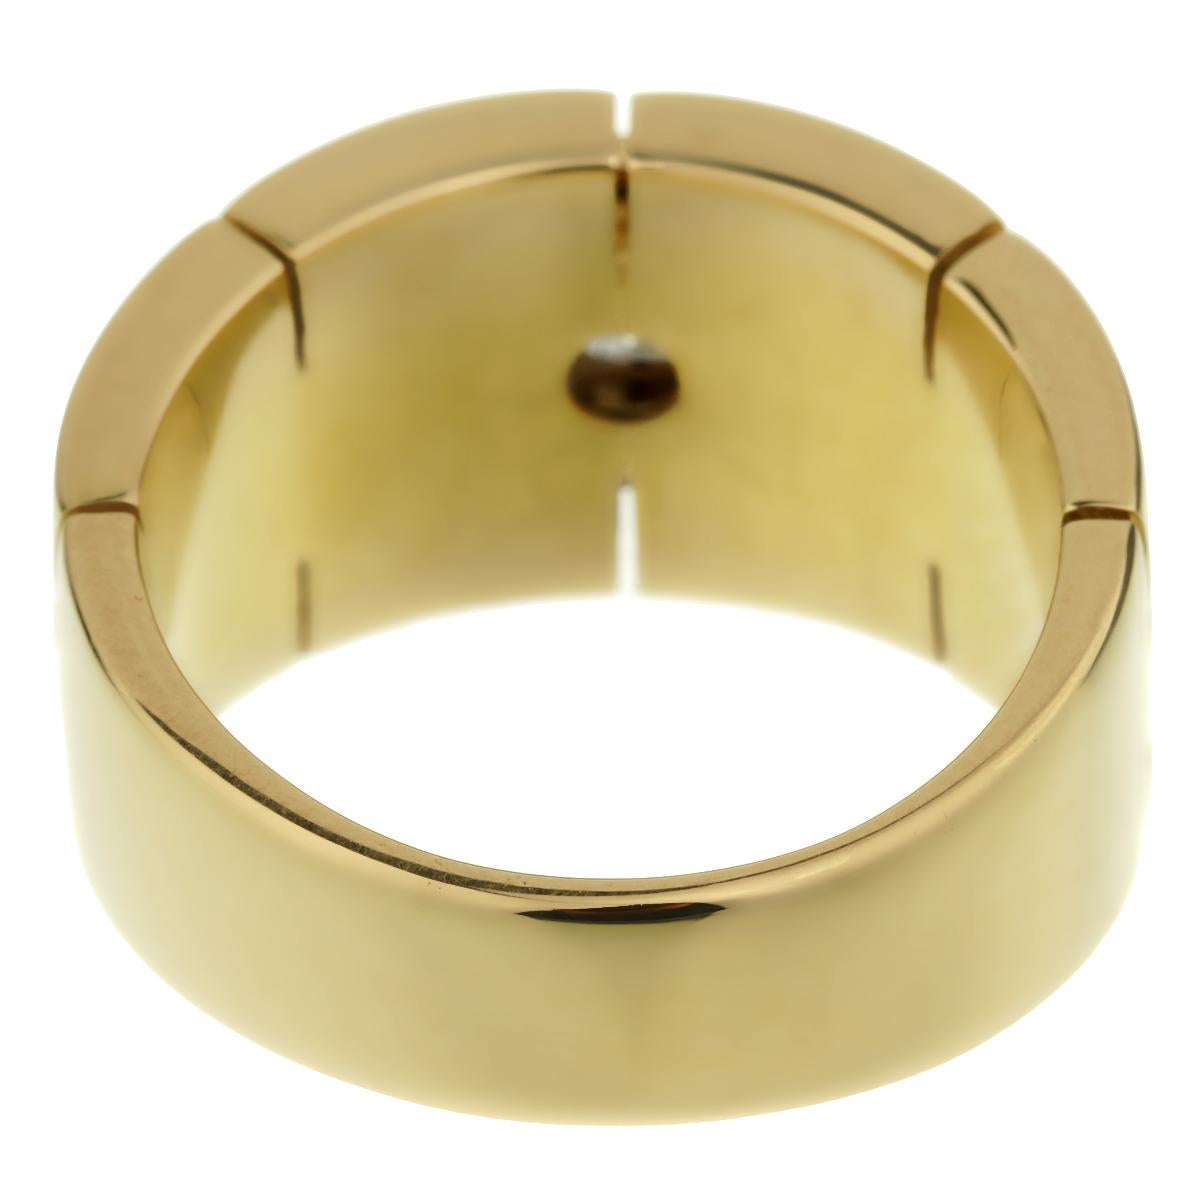 Ein ikonischer Cartier-Panthere-Ring mit einem runden Cartier-Diamanten im Brillantschliff von 0,25 Karat in 18 Karat Gelbgold. Der Ring hat die Größe 5 1/4 und kann bei Bedarf in der Größe angepasst werden.